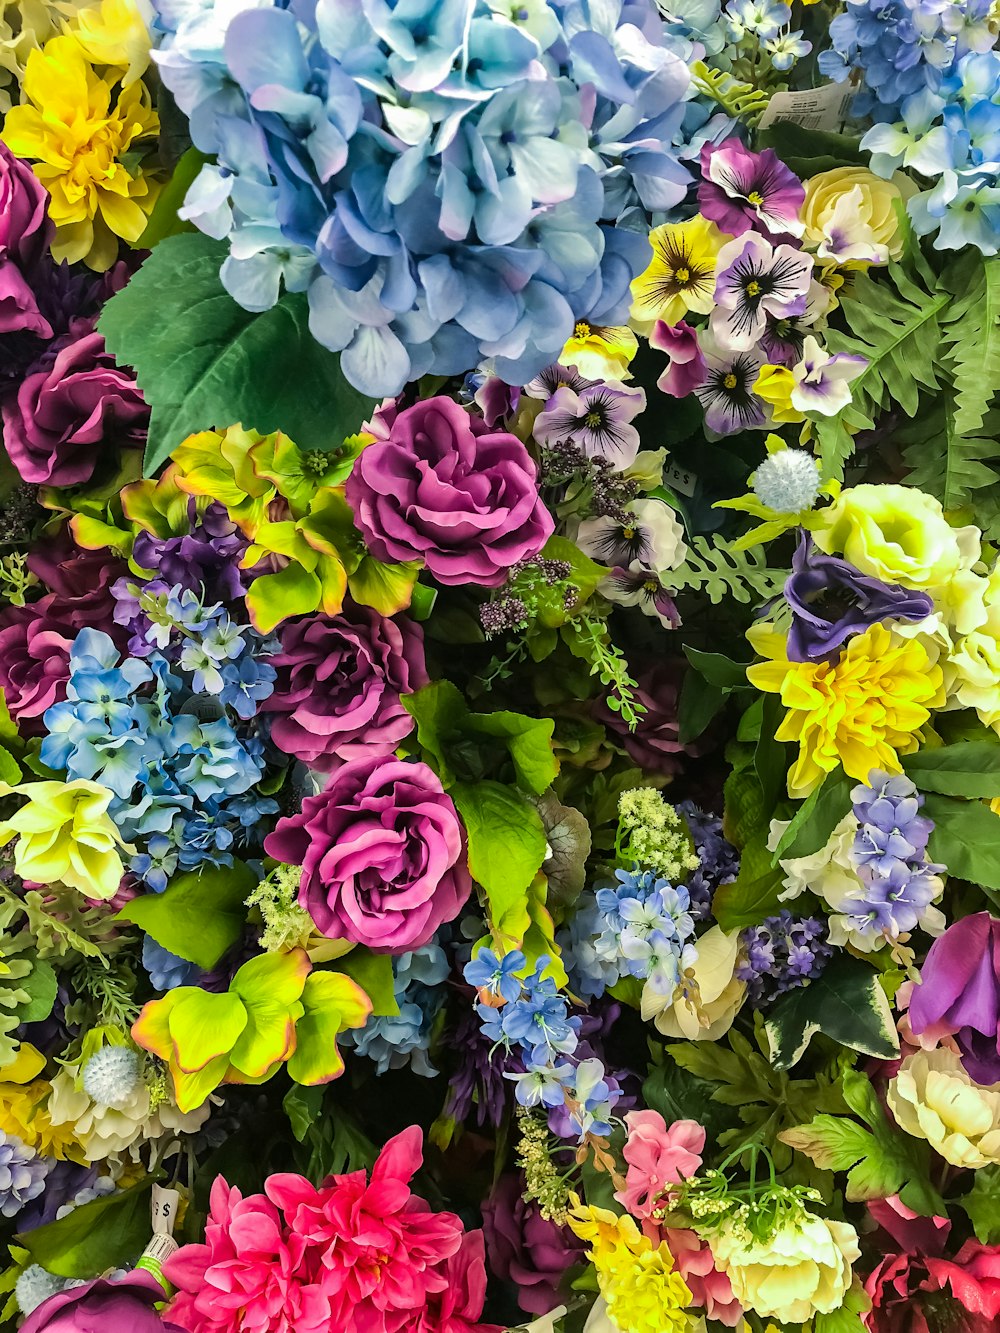 900 Floral Background Images Download Hd Backgrounds On Unsplash